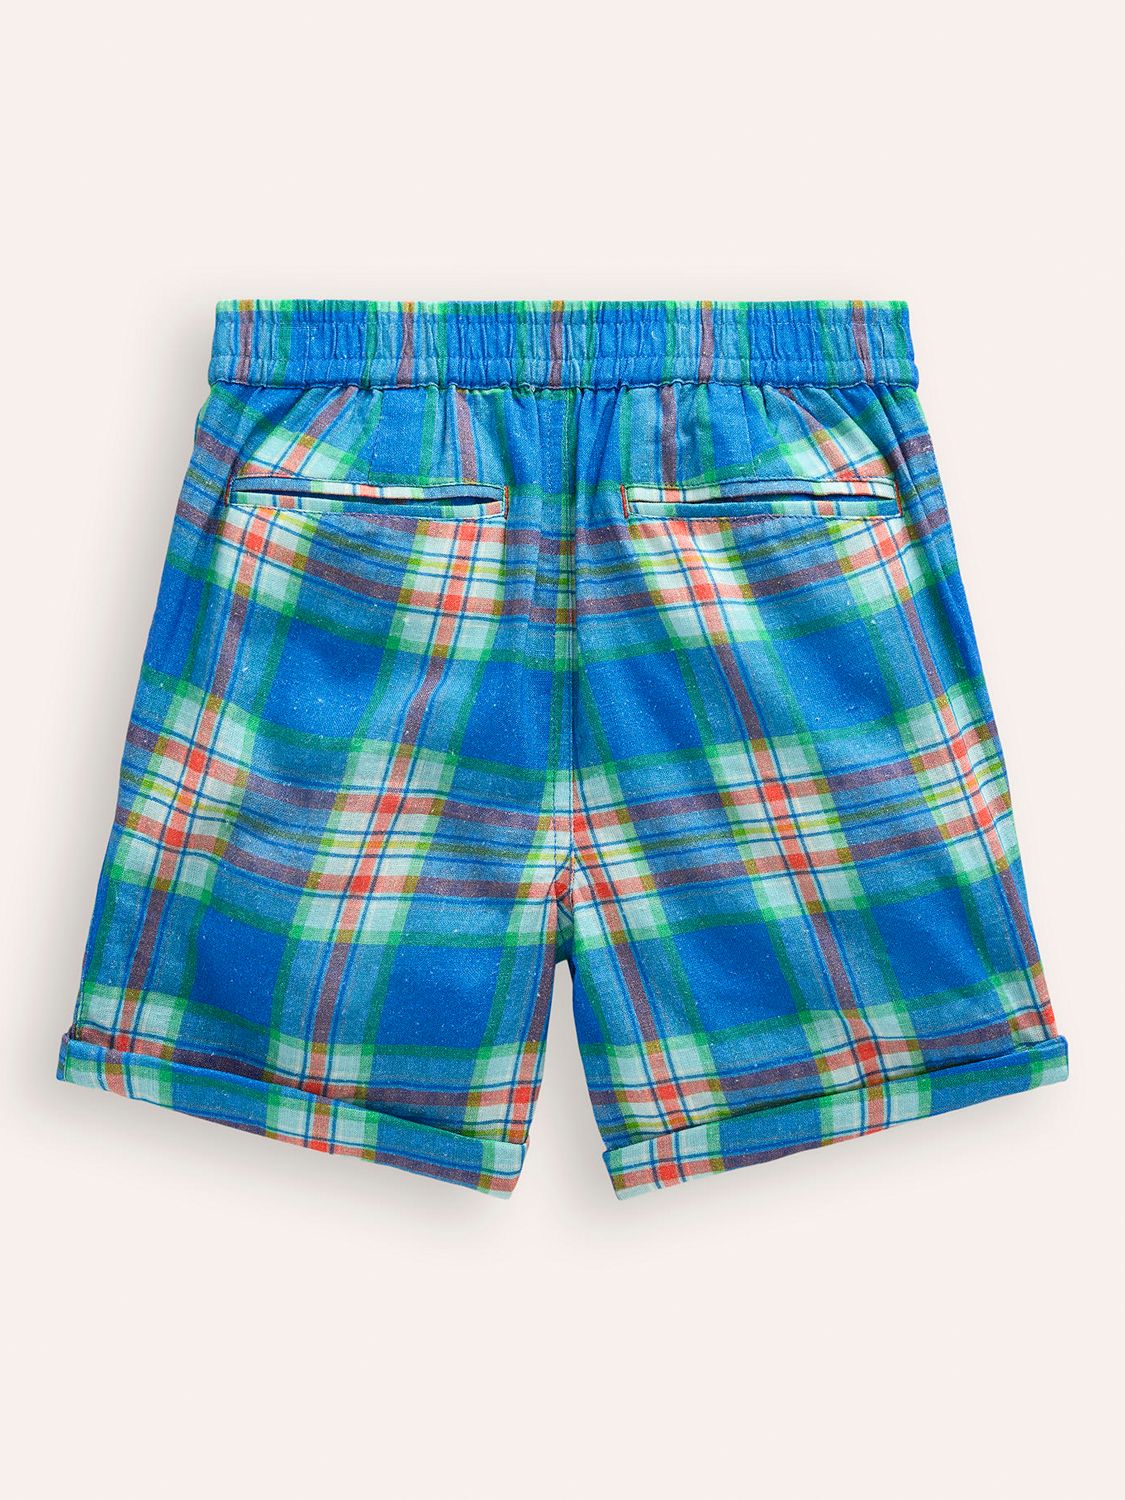 Mini Boden Kids' Linen Blend Smart Check Shorts, Blue/Green, 12-18 months